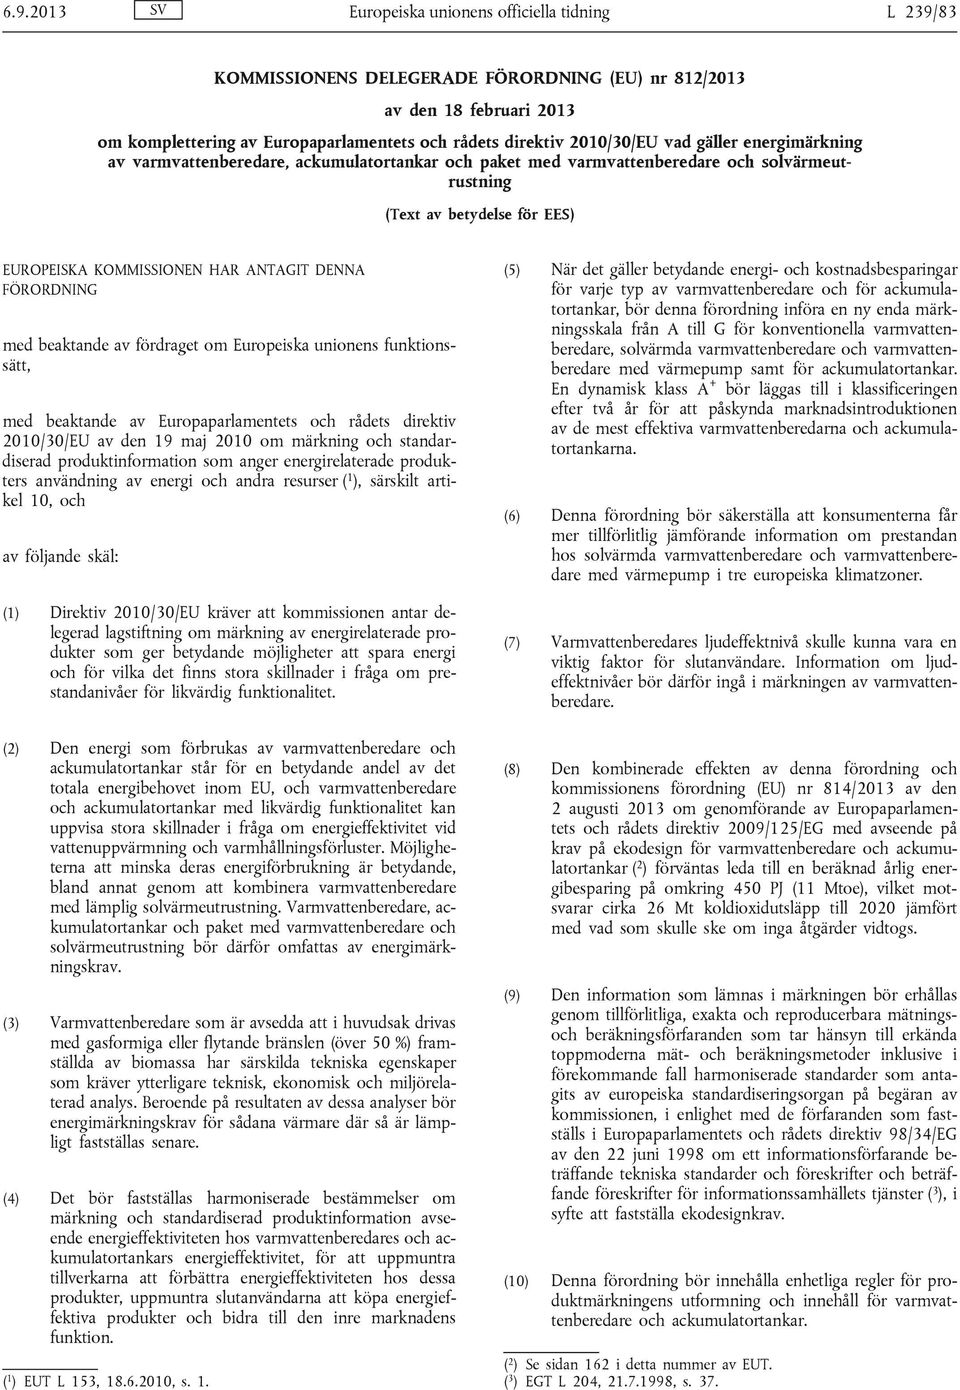 DENNA FÖRORDNING med beaktande av fördraget om Europeiska unionens funktionssätt, med beaktande av Europaparlamentets och rådets direktiv 2010/30/EU av den 19 maj 2010 om märkning och standardiserad